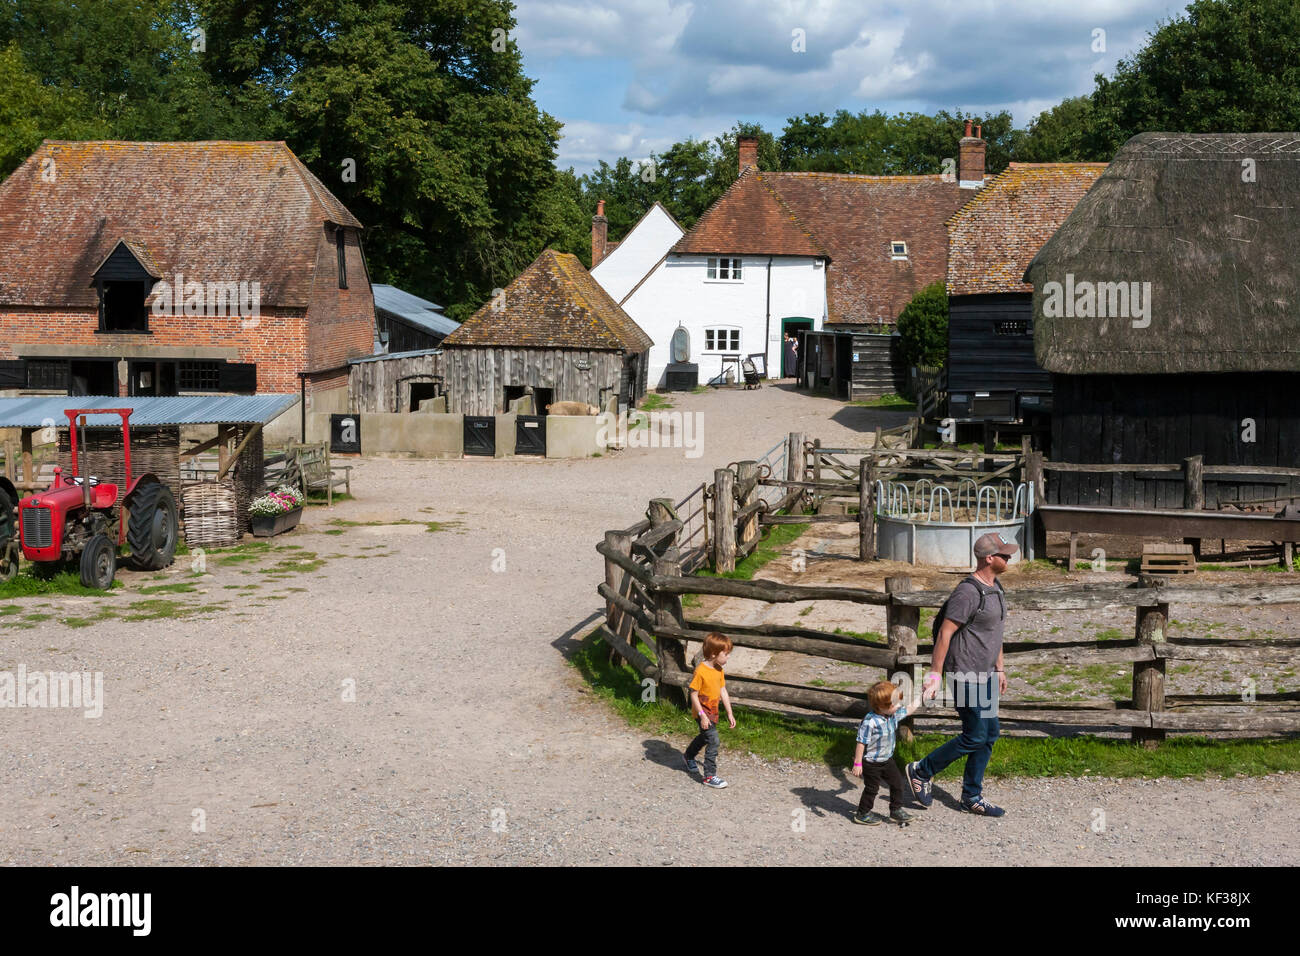 Manor Farm, Bursledon, Hampshire, England: Eine lebendige Geschichte Bauernhof, in der BBC2-Serie "Wartime Farm" vorgestellt Stockfoto